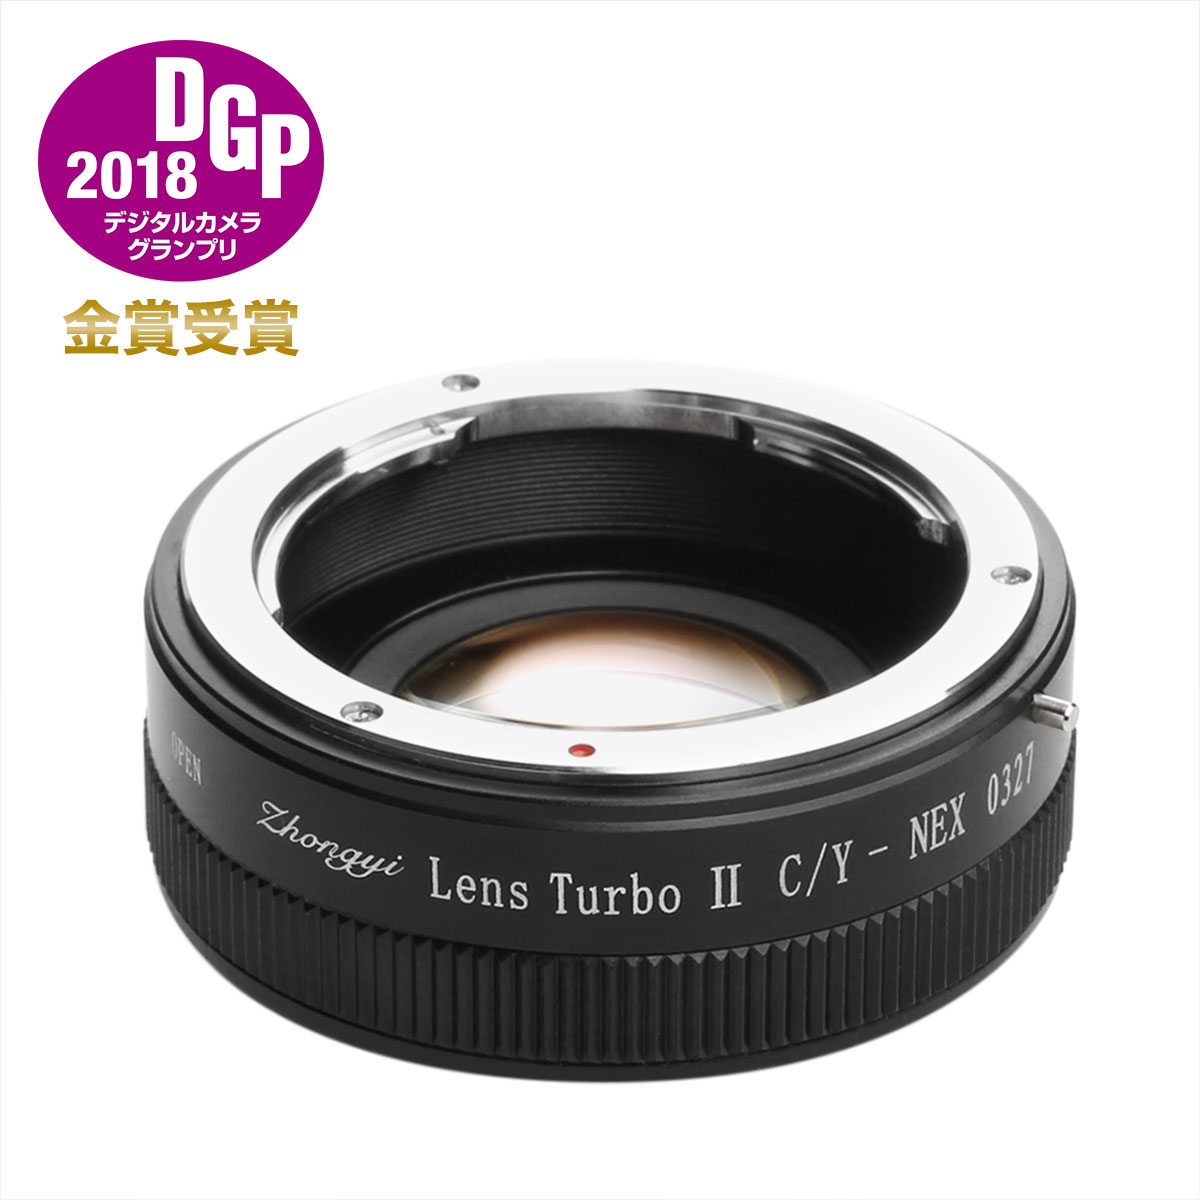 中一光学 Lens Turbo II C/Y-NEX コンタックス・ヤシカマウントレンズ